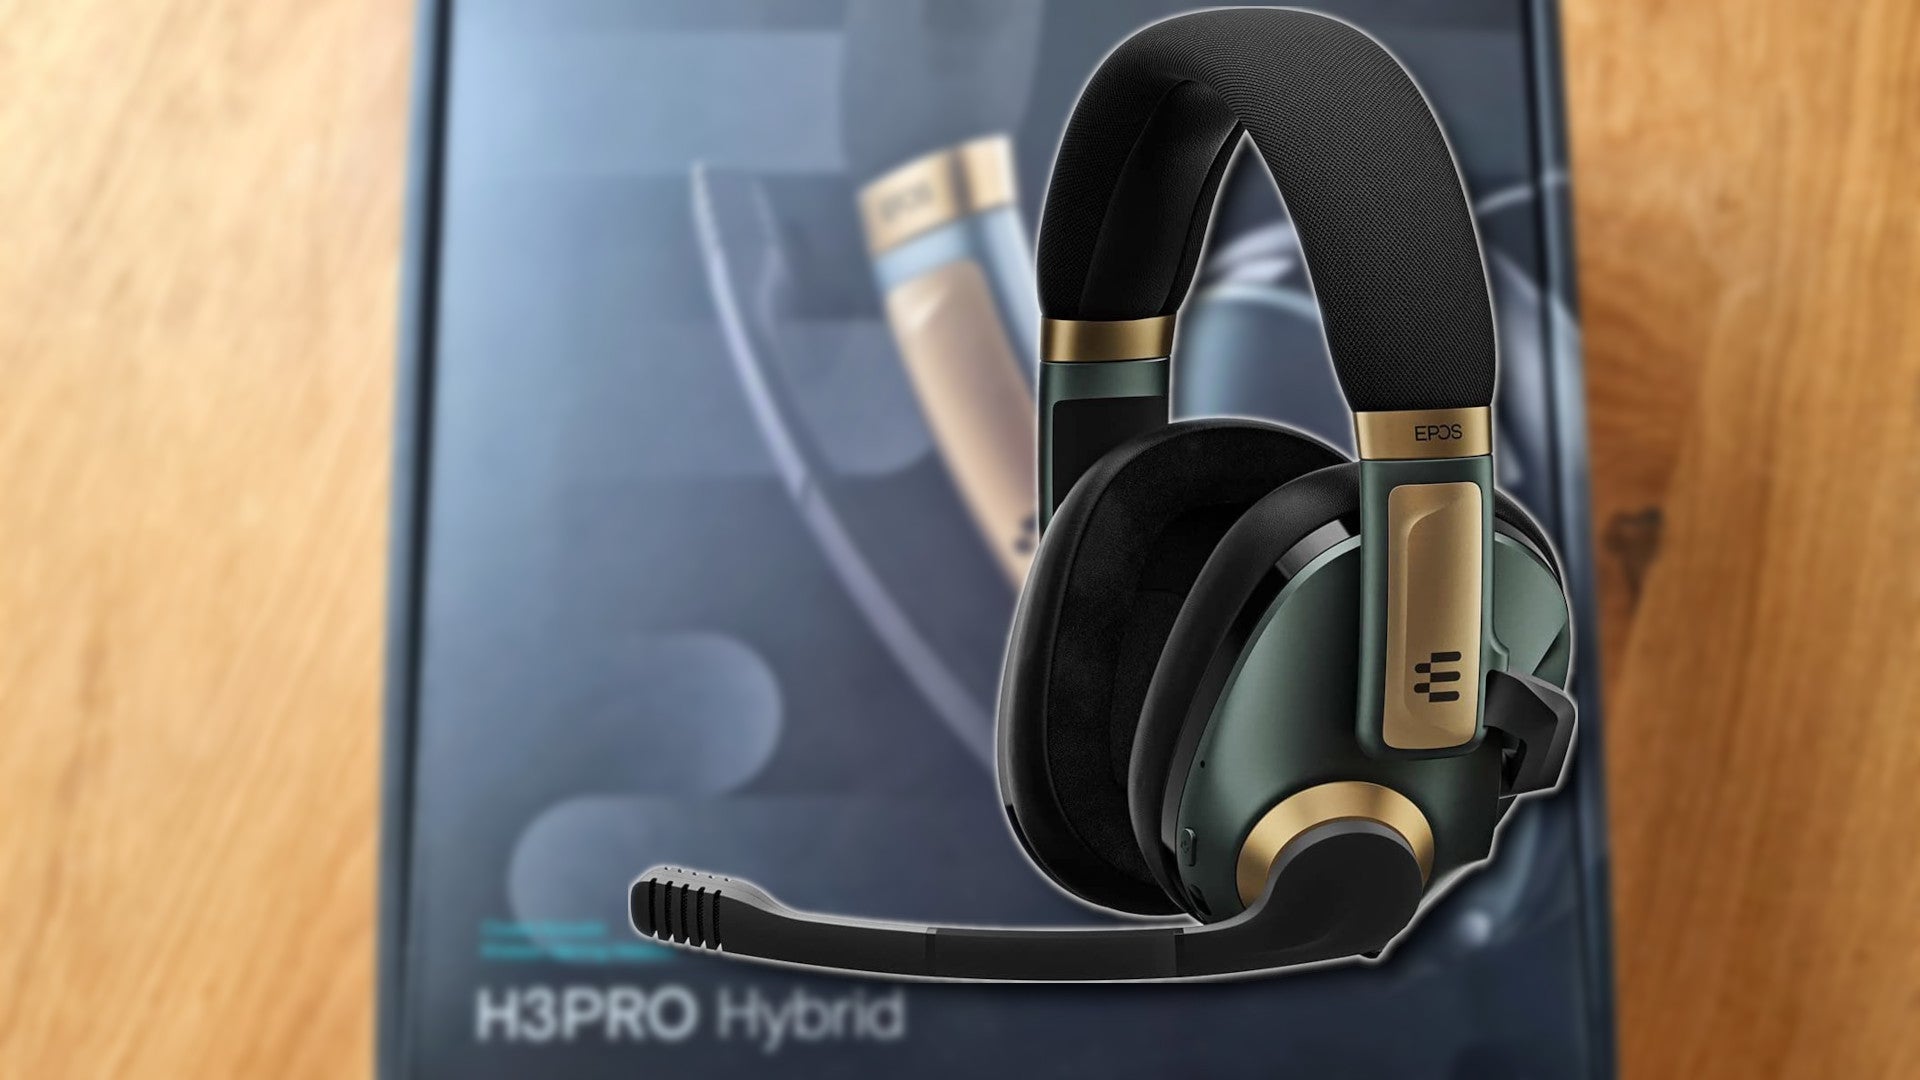 Bilder zu Epos H3Pro Hybrid Gaming-Headset Test - Qualität, die ihren Preis hat